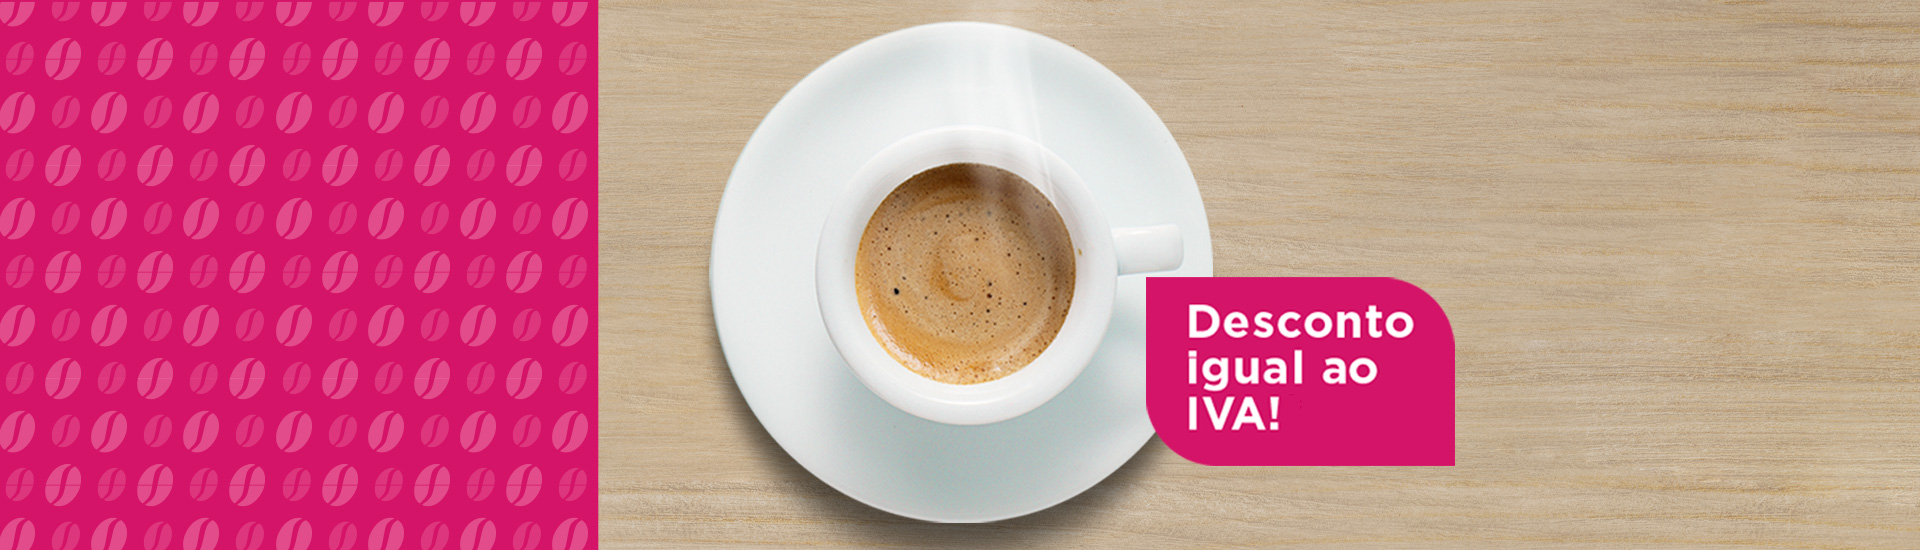 0% IVA*<br>100% Café